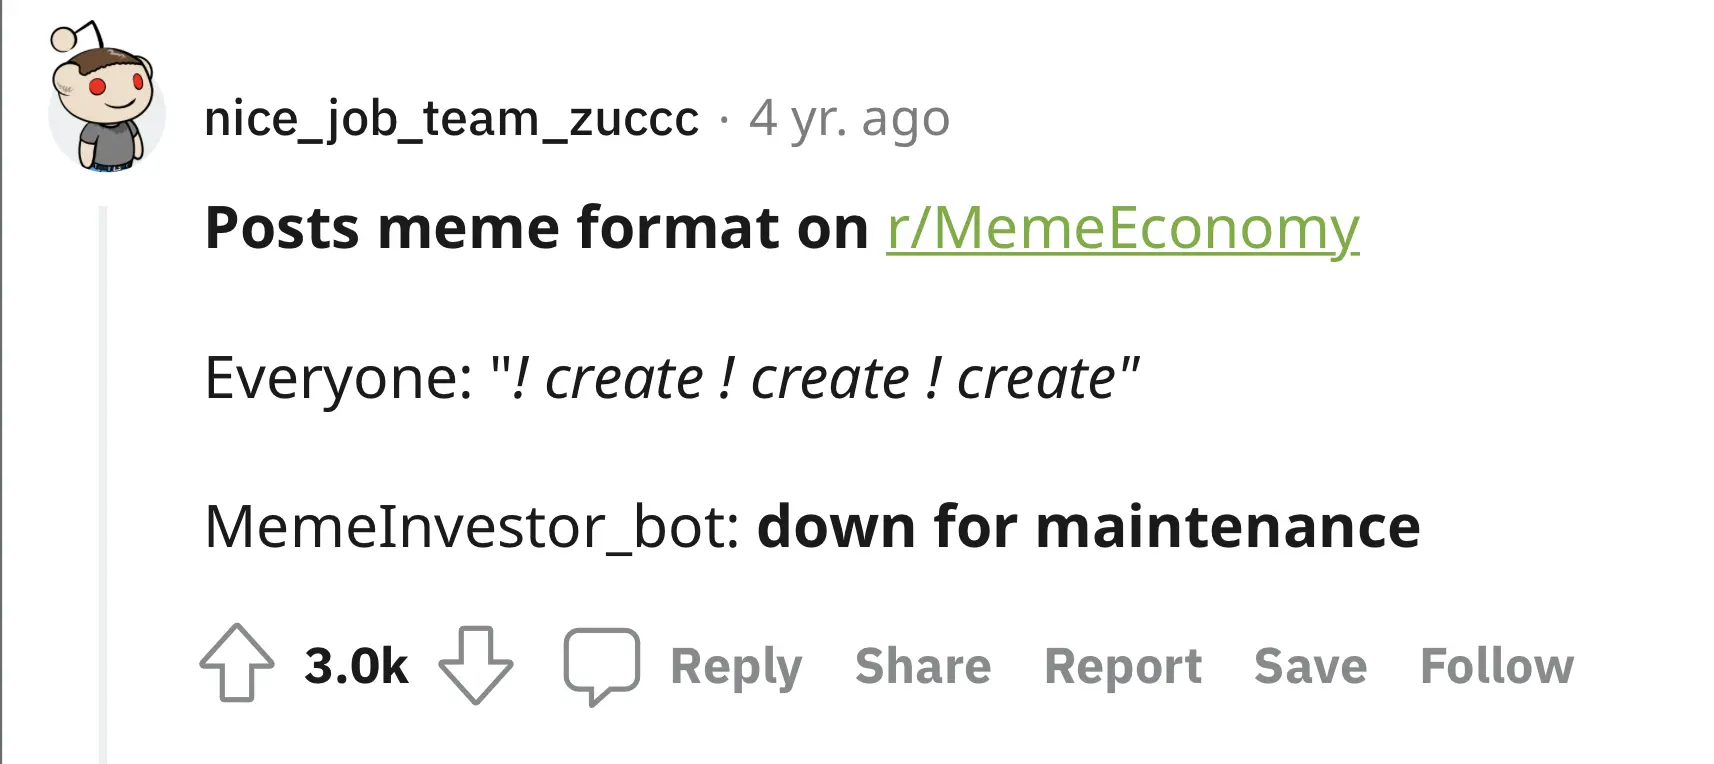 MemeInvestor_bot went down